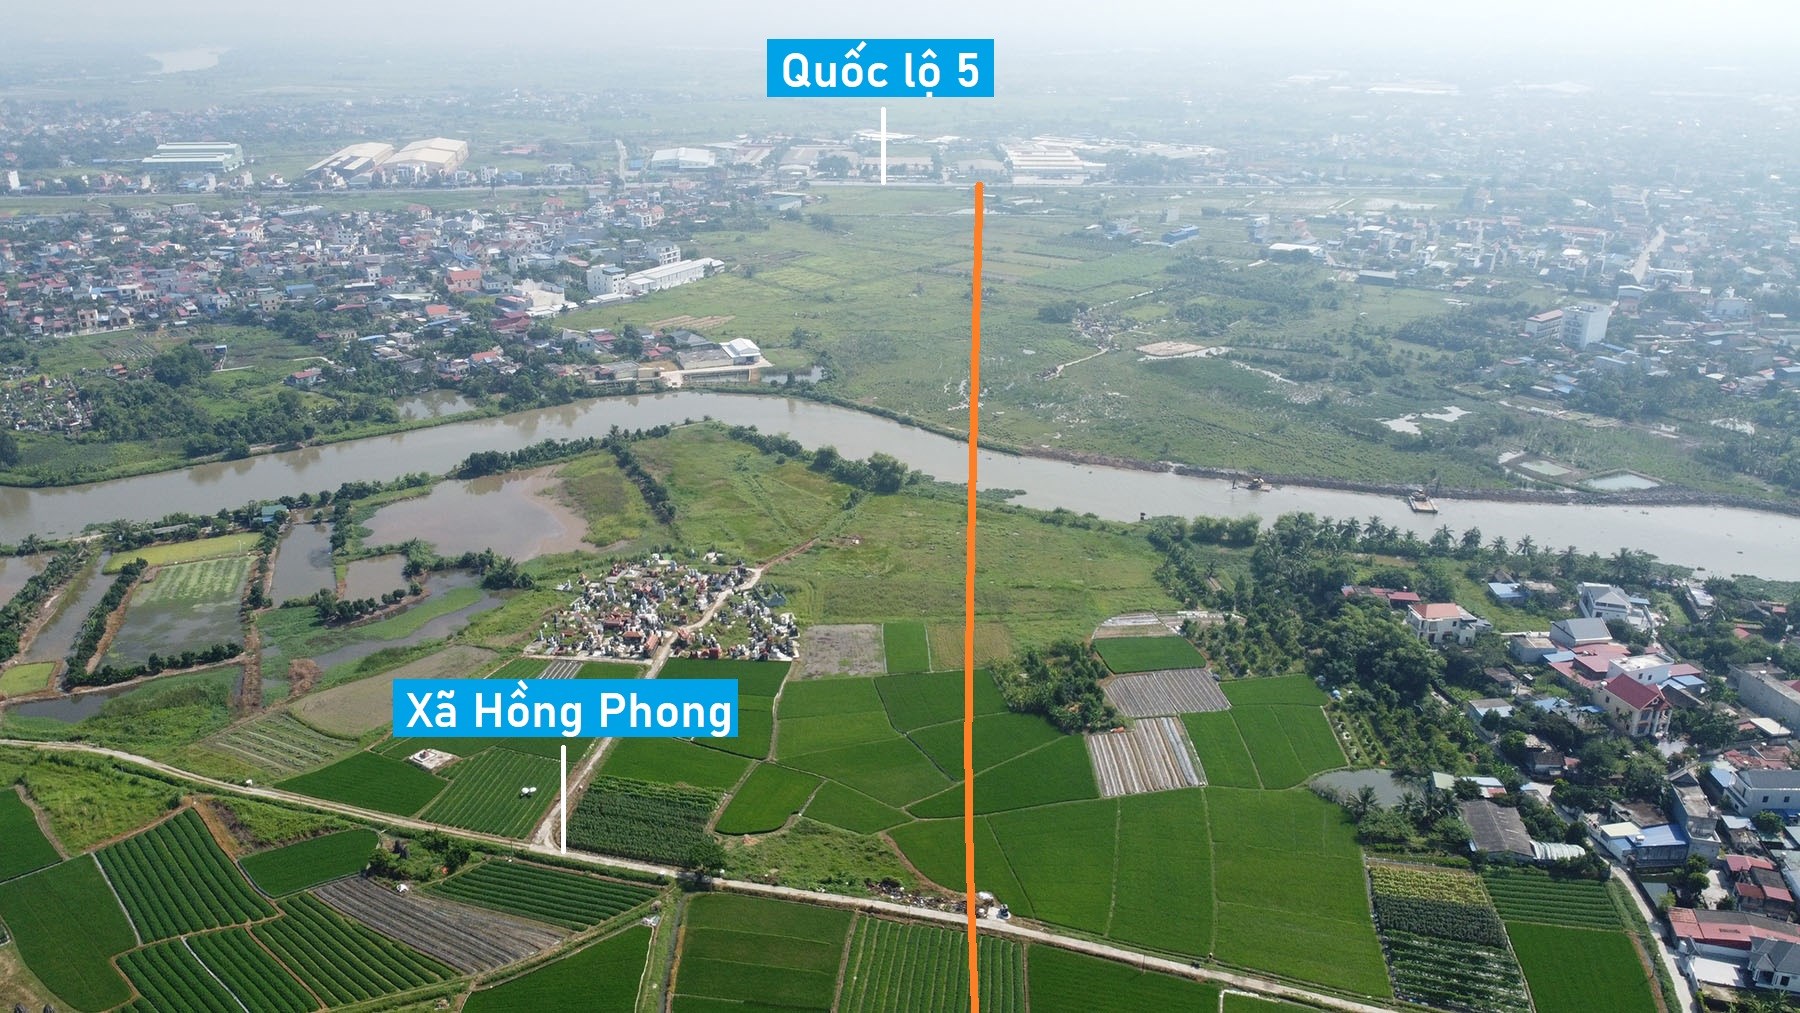 Toàn cảnh vị trí quy hoạch cầu vượt sông Rế ở huyện An Dương, nối xã Hồng Phong ra QL5 Hải Phòng